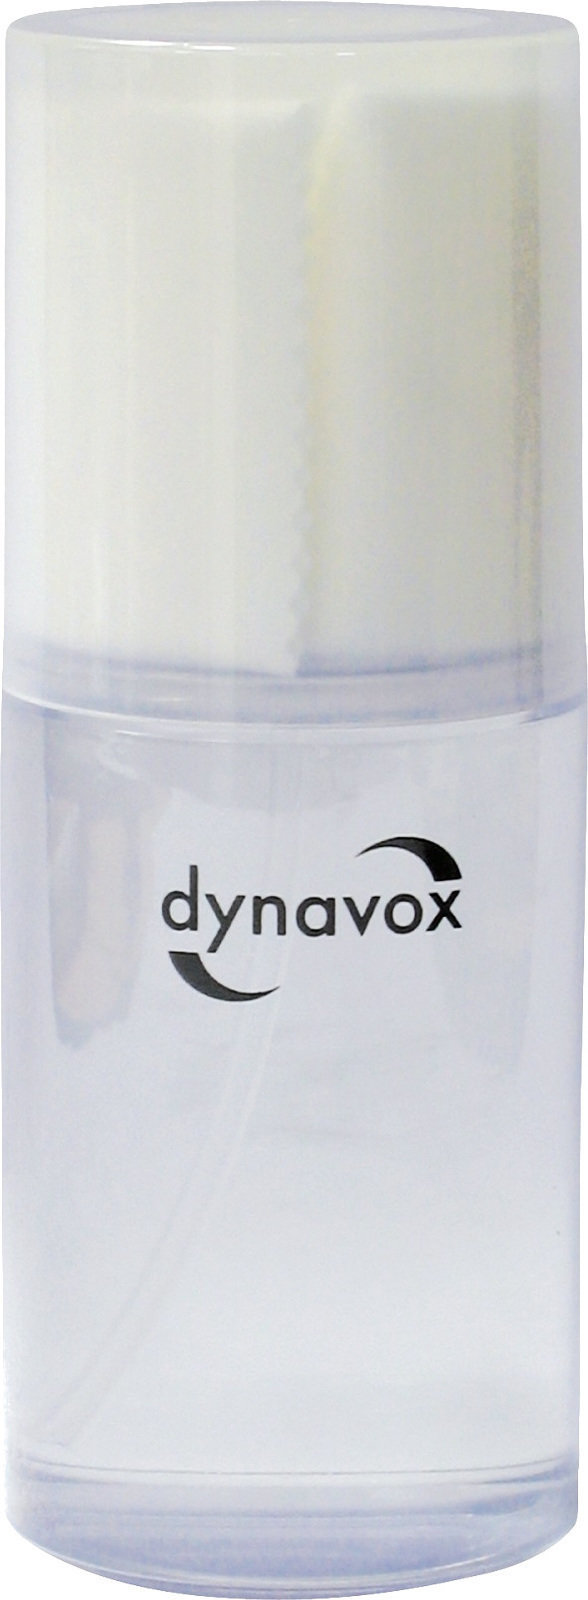 Rengöringsmedel för LP-skivor Dynavox Cleaning Fluid Cleaning Fluid Rengöringsmedel för LP-skivor